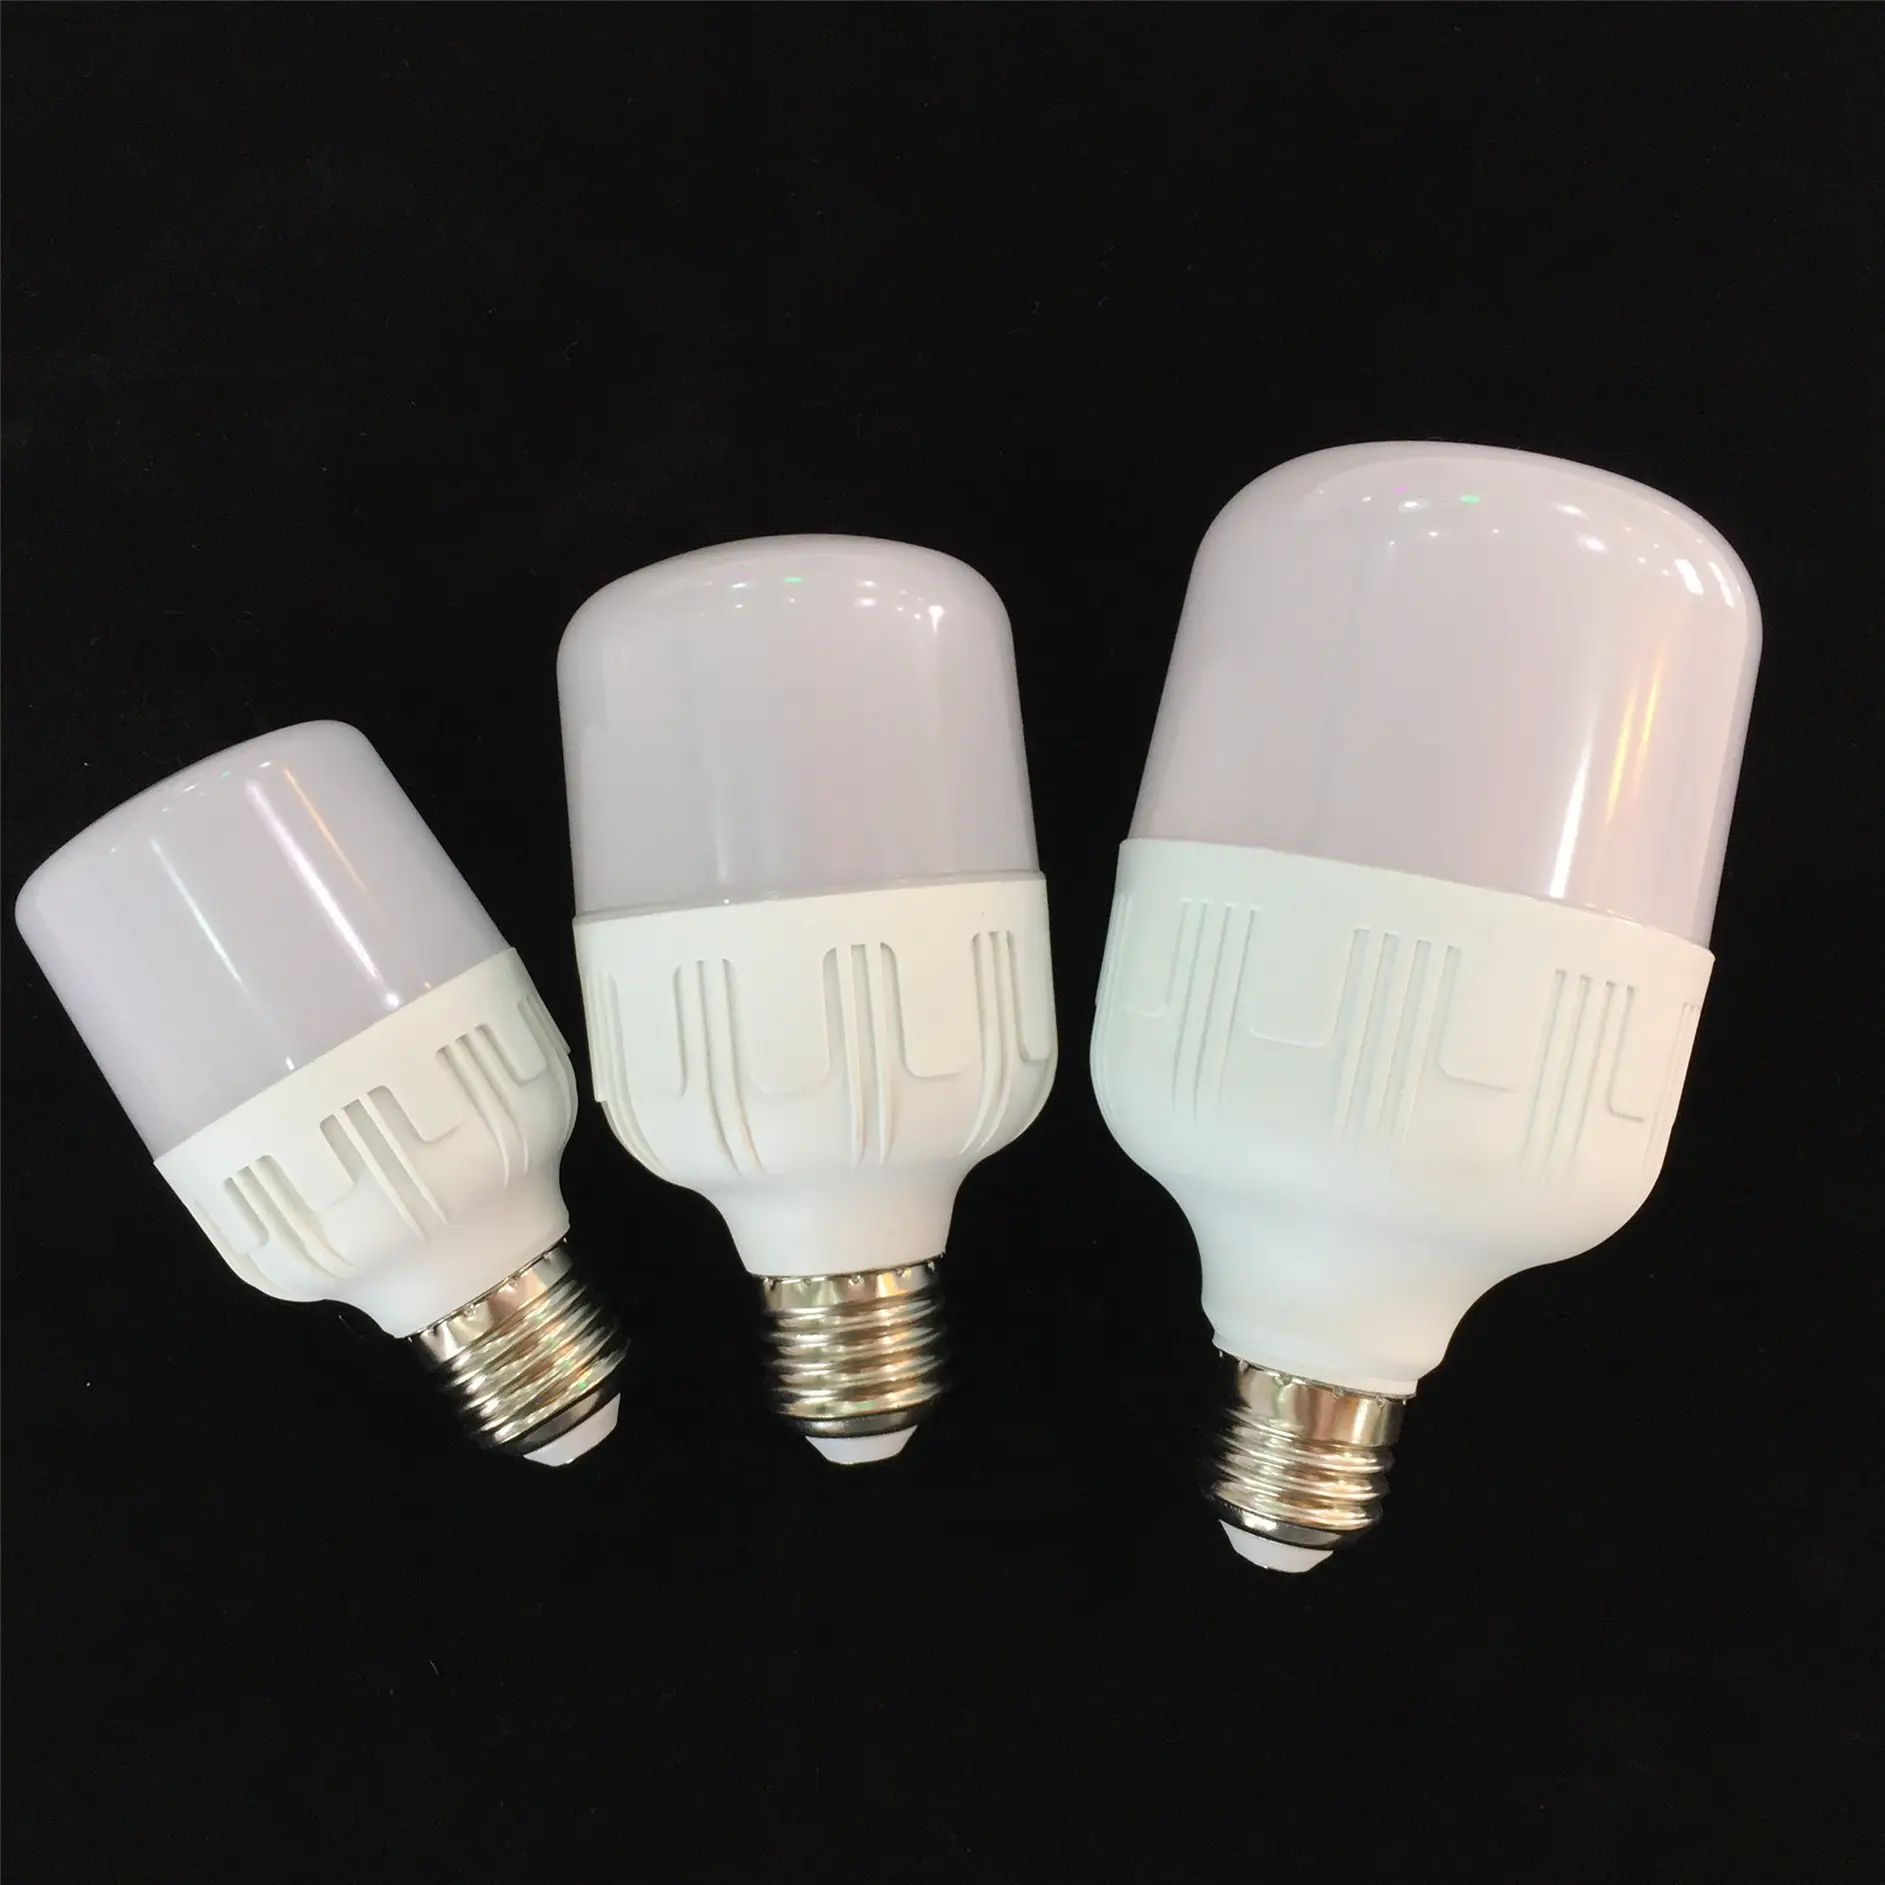 High brightness Aluminum Plastic T shape electric LED bulb T60W 13W LED light